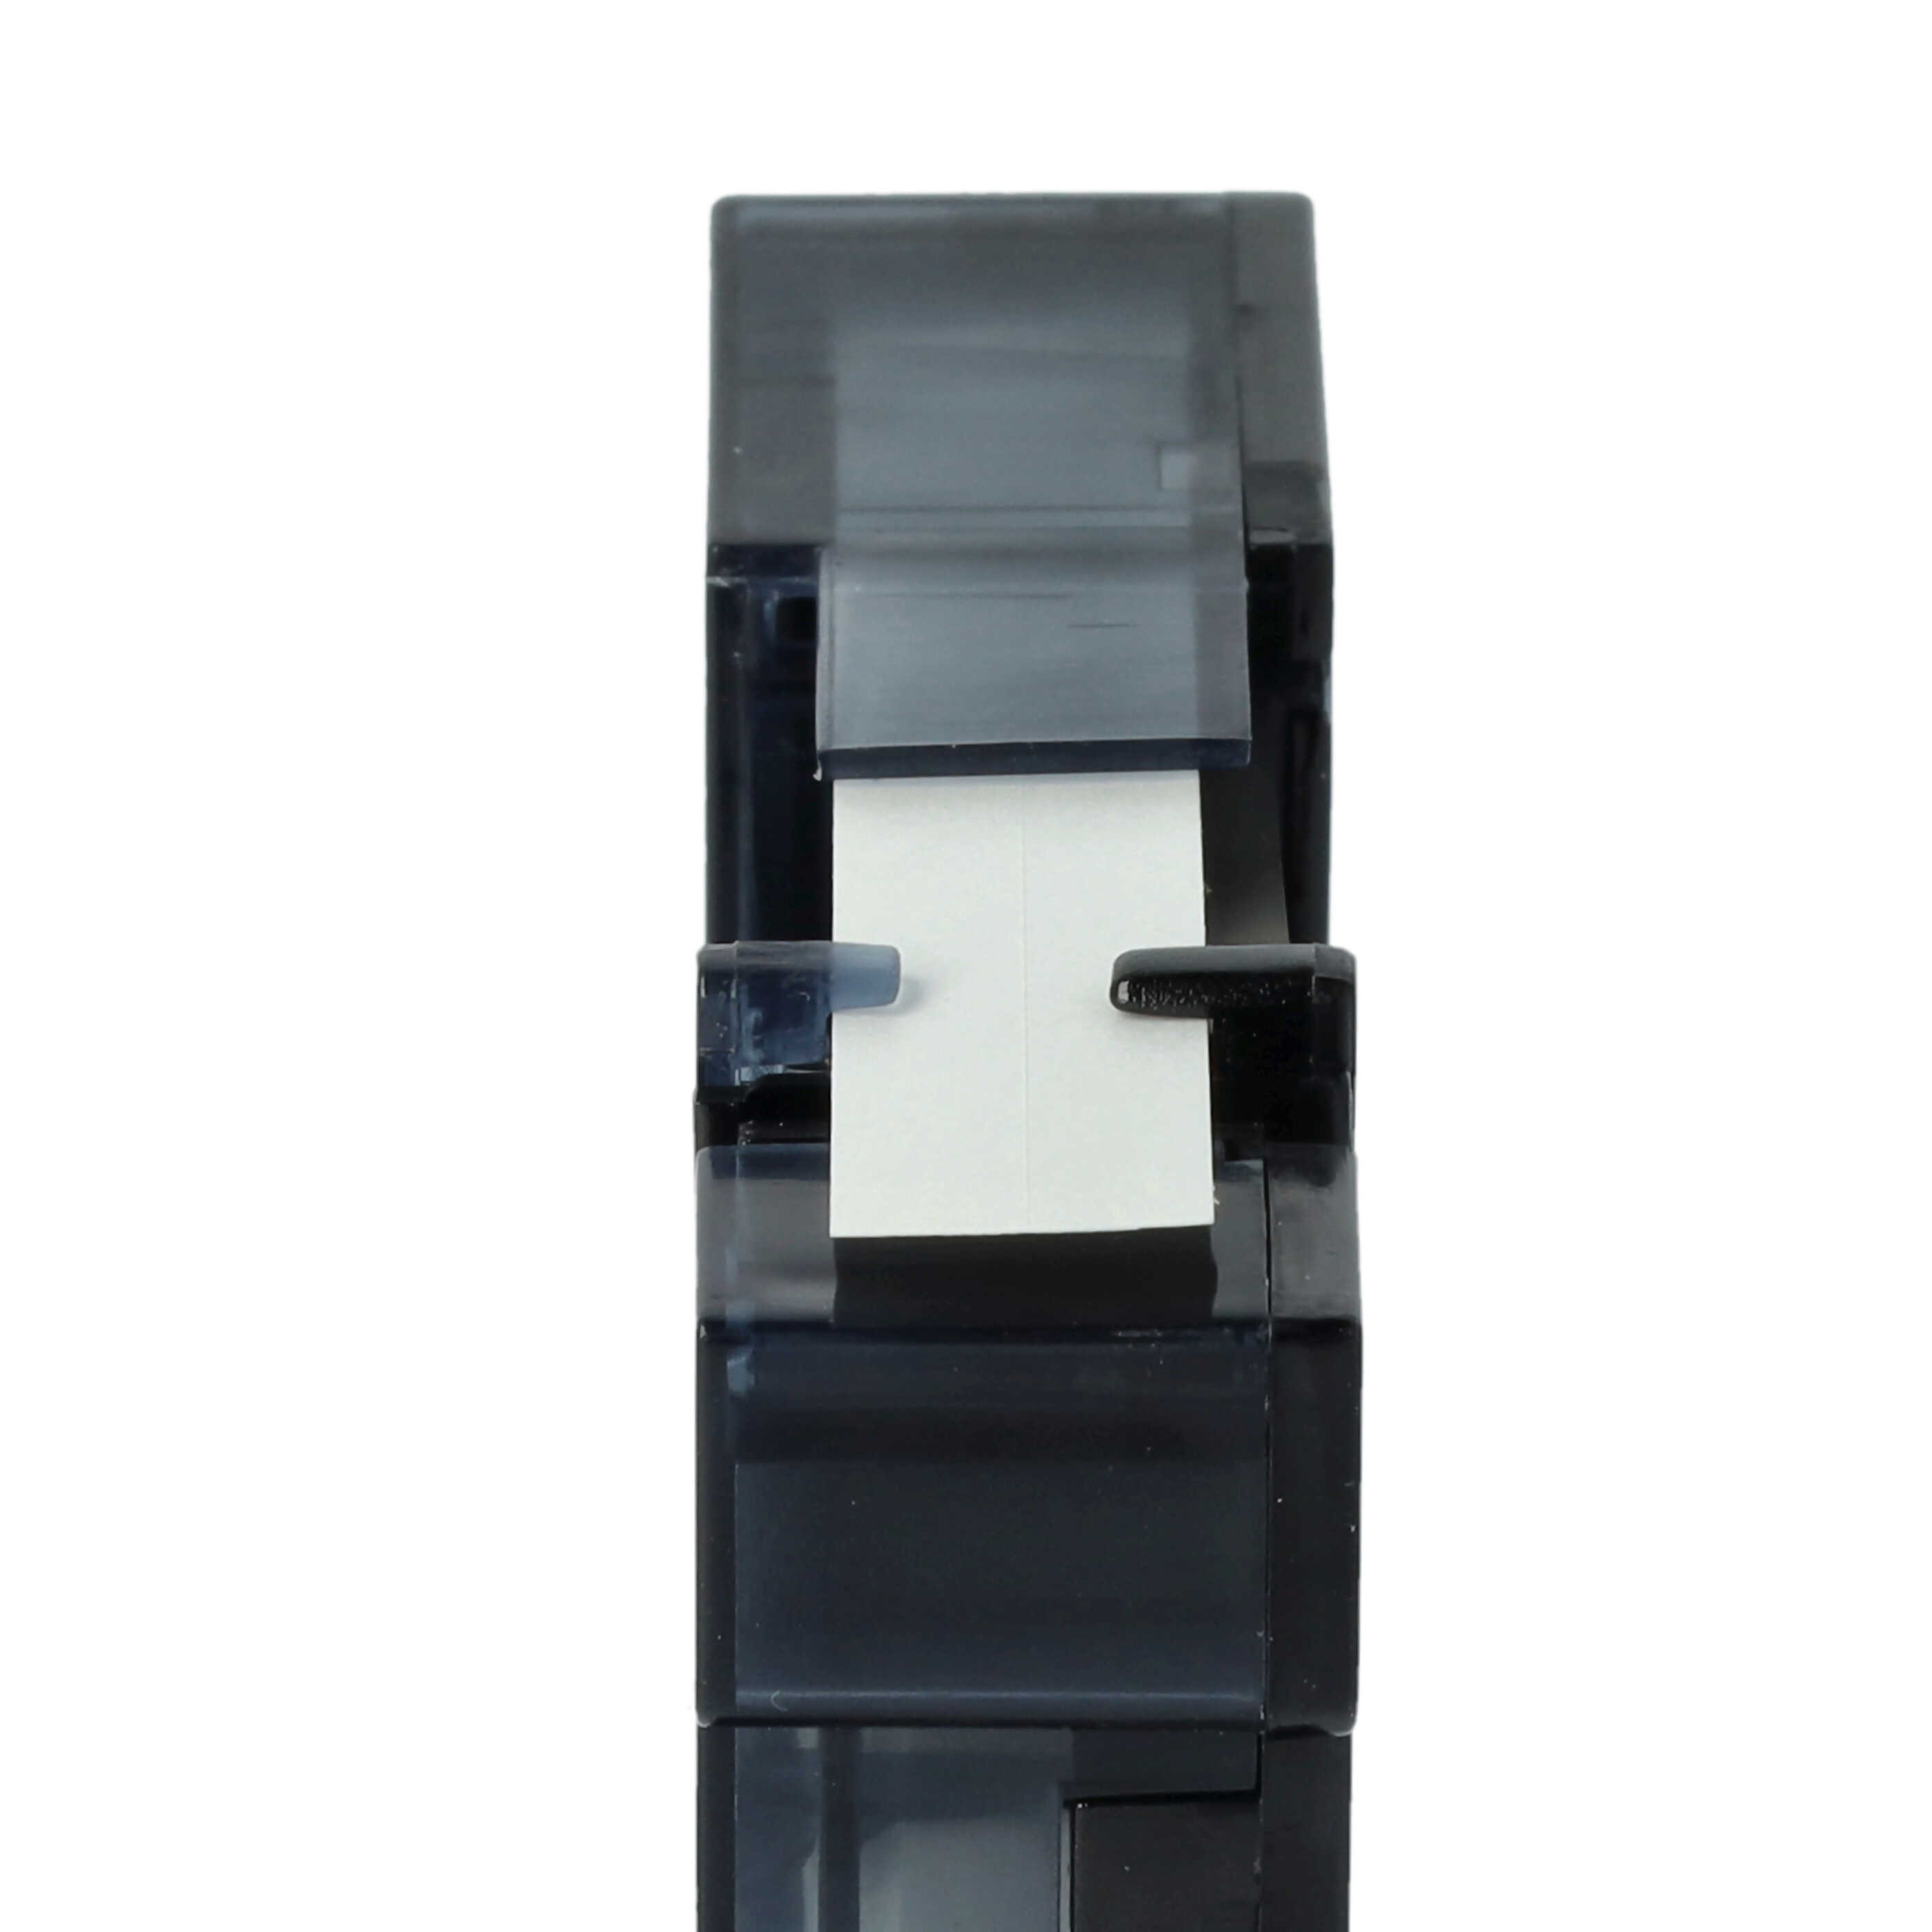 10x Casete cinta escritura reemplaza Dymo , 40913, D1 Negro su Blanco